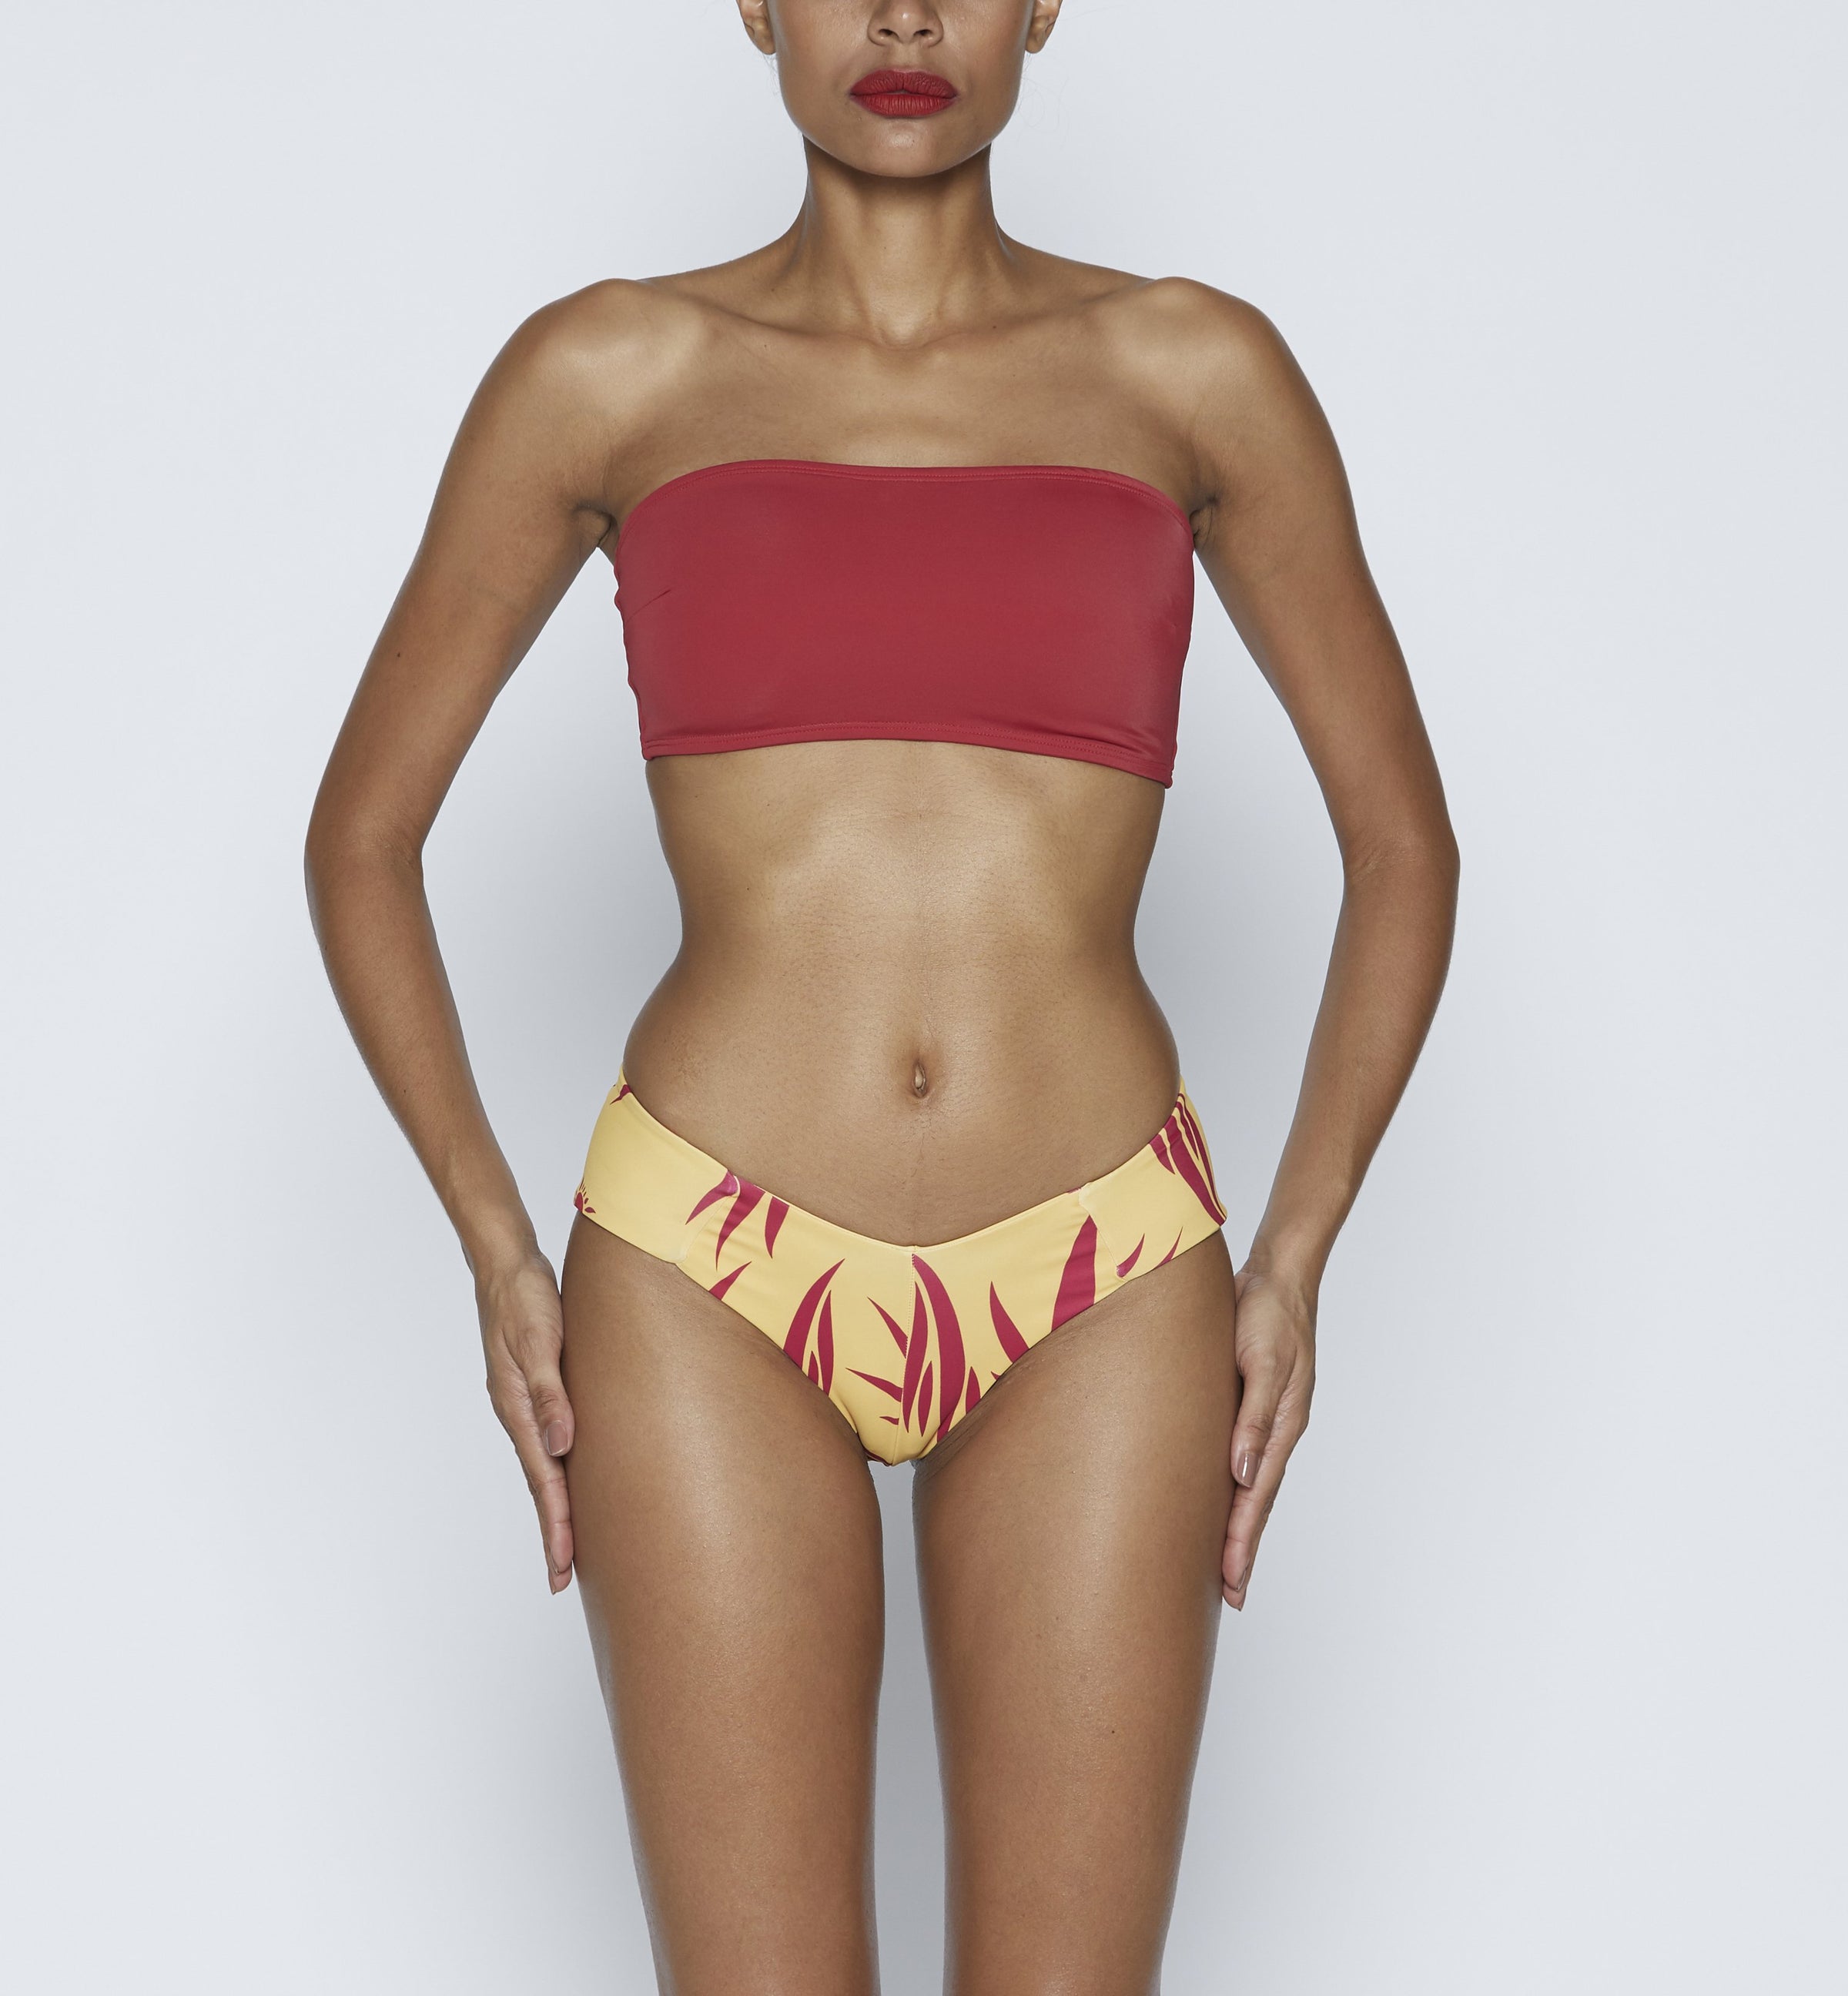 Zai Swim Diva/Red P, Women Bikini Swimwear